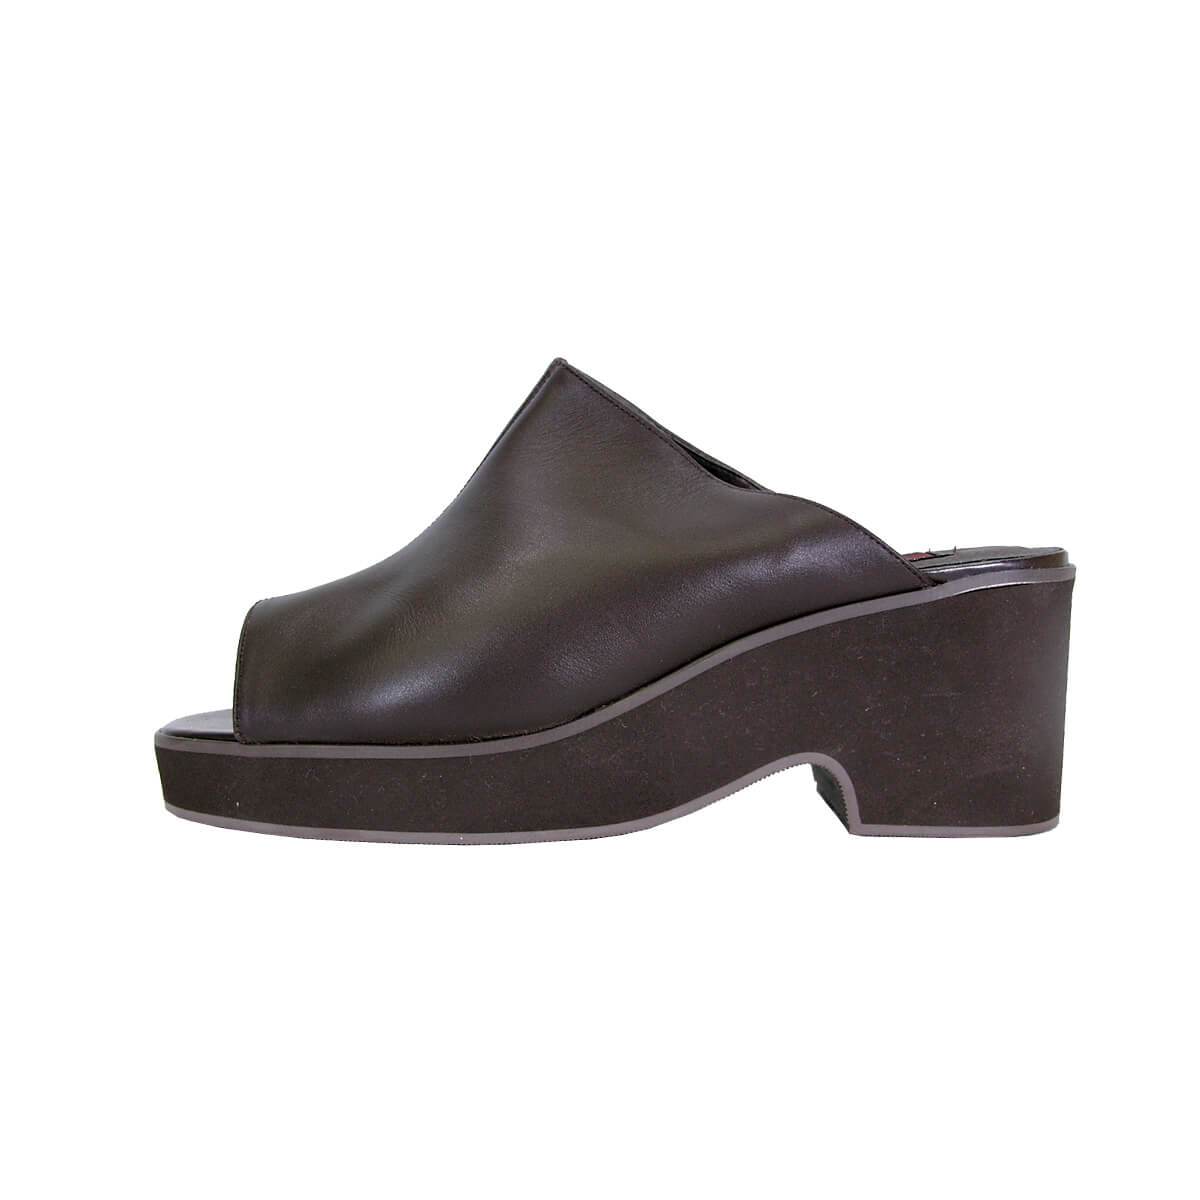 PEERAGE Leena Women's Wide Width Comfort Leather Sandals